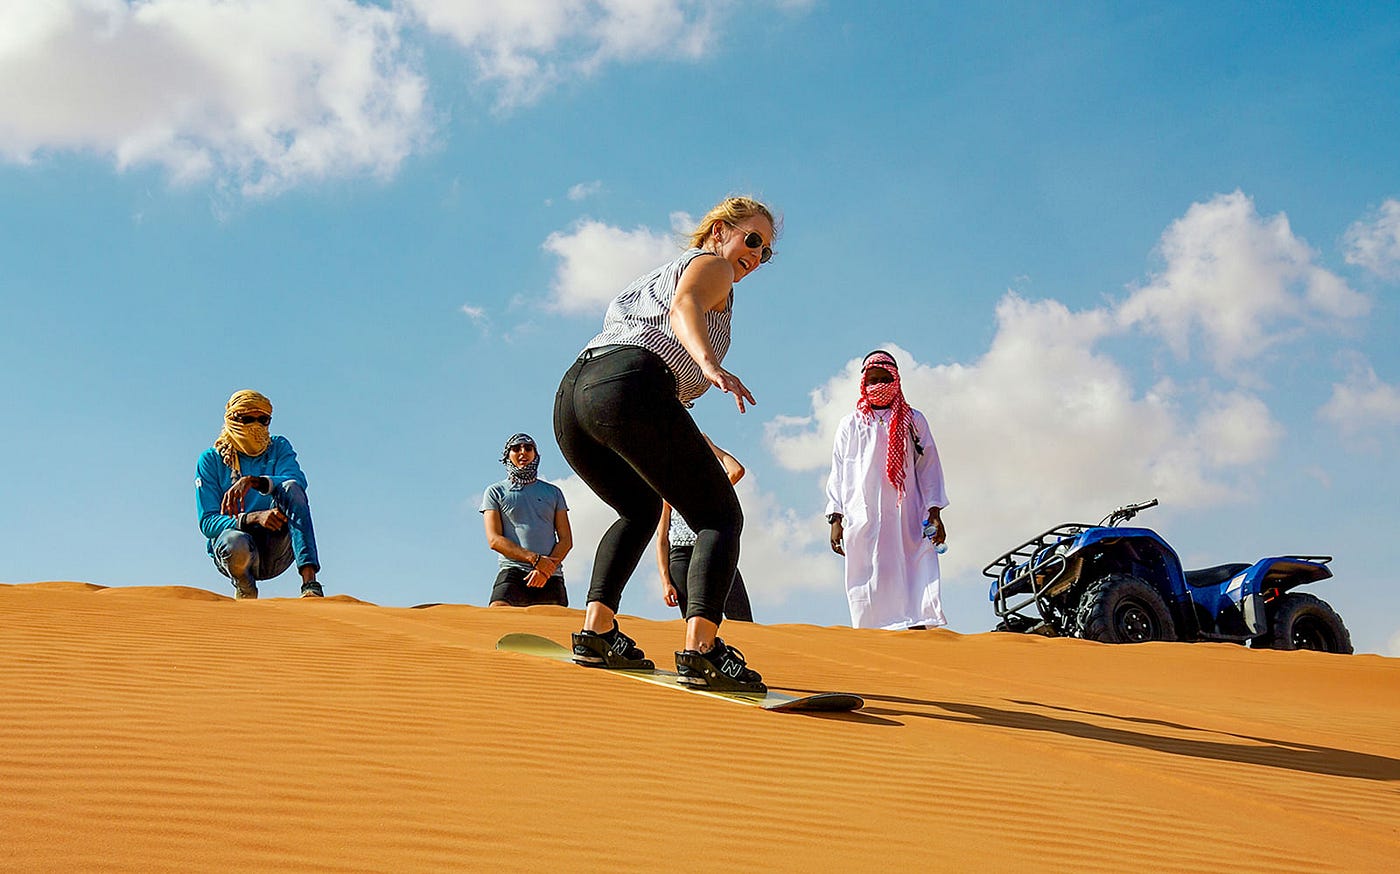 Dune Buggy Desert Safari Dubai